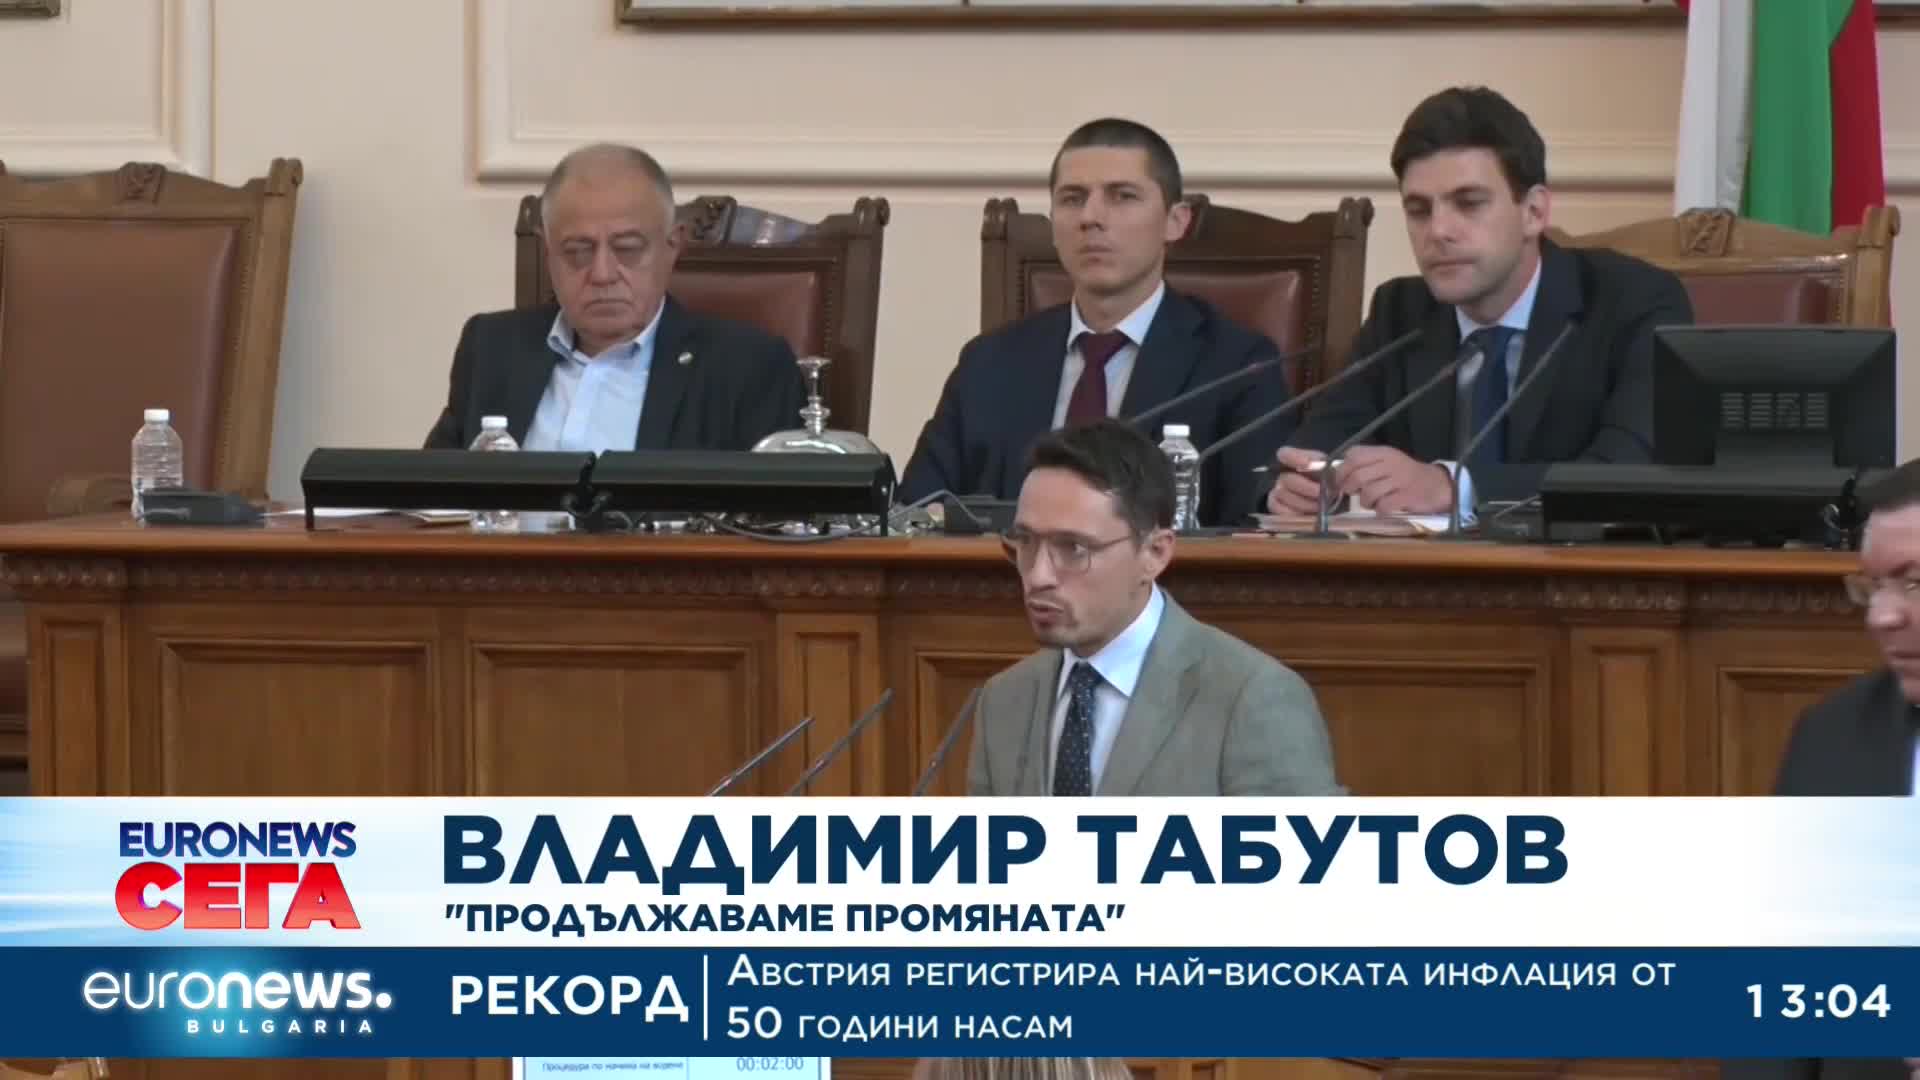 AEЦ Козлодуй и бежанците станаха повод за спор в парламента